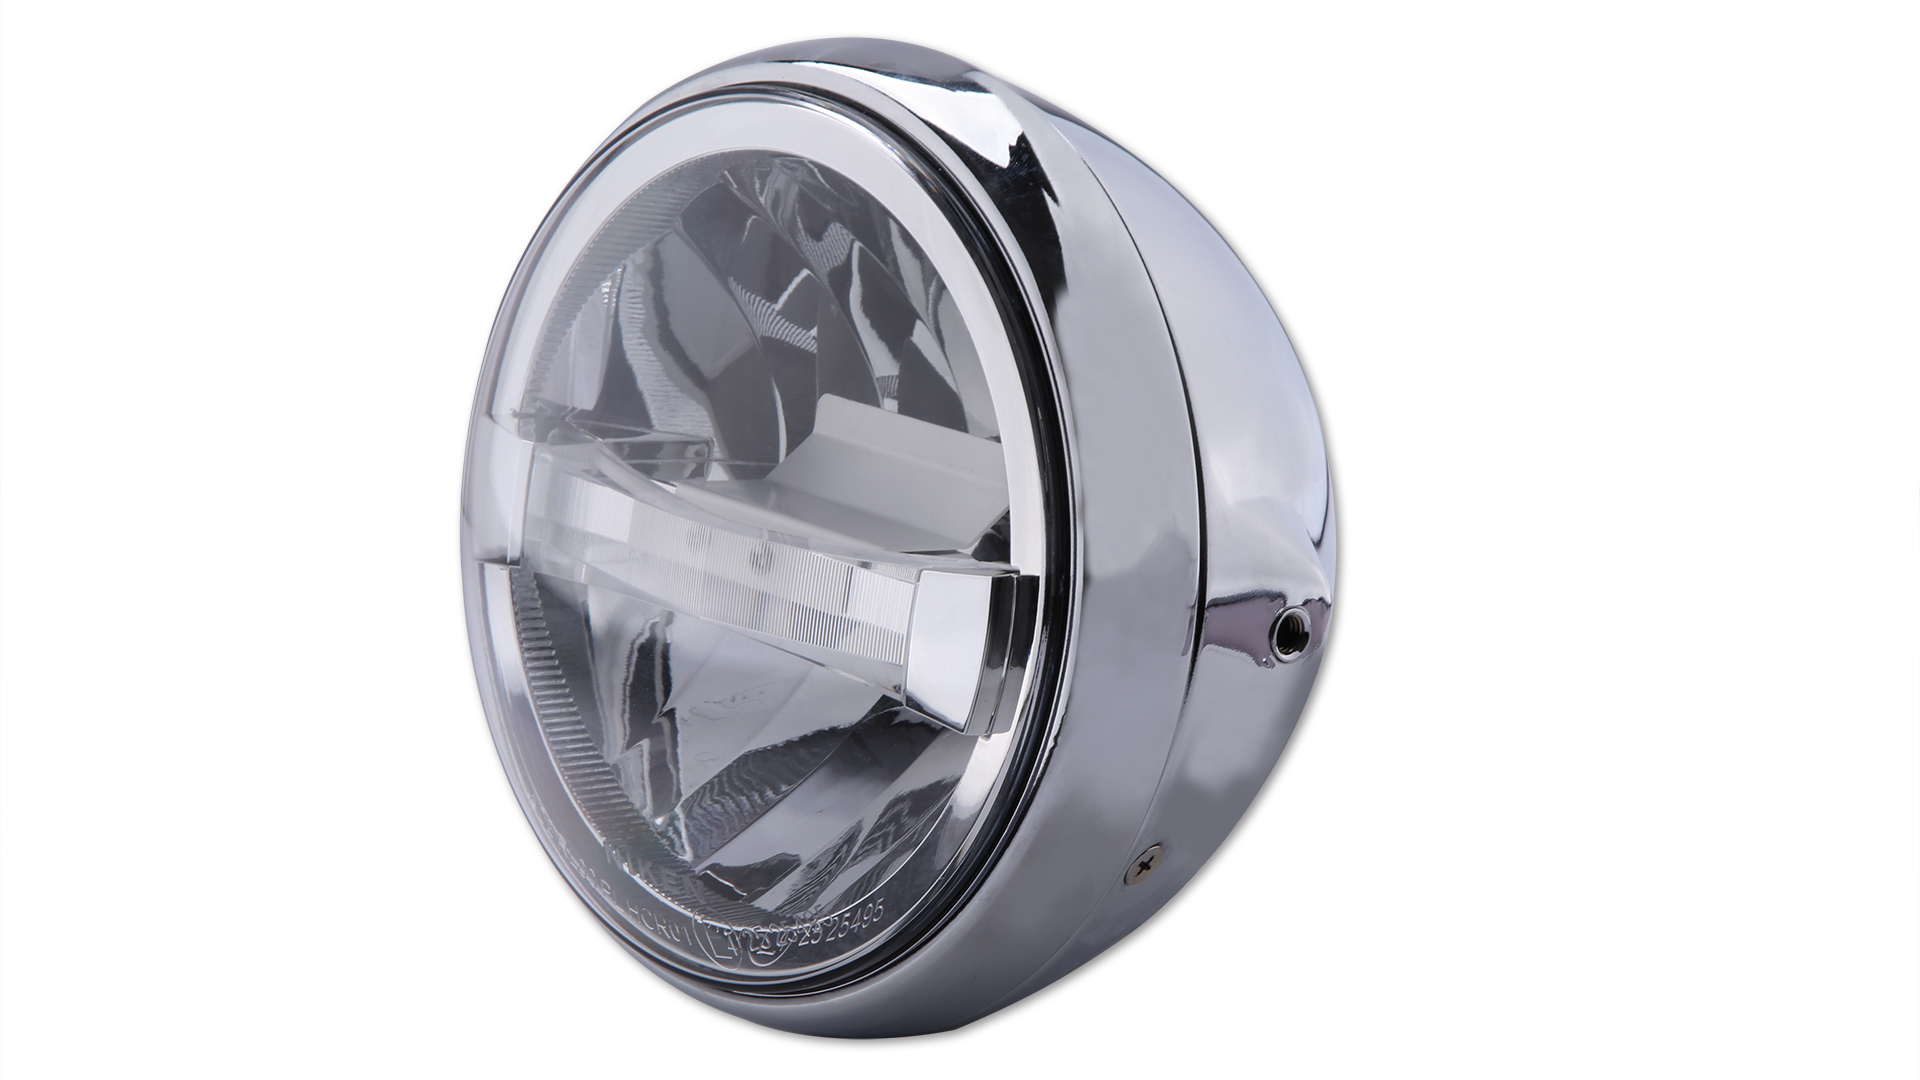 7 Zoll LED-Scheinwerfer BRITISH-STYLE TYP 4 mit TFL, Metallgehäuse, klares Glas, rund, seitliche Befestigung, E-geprüft.